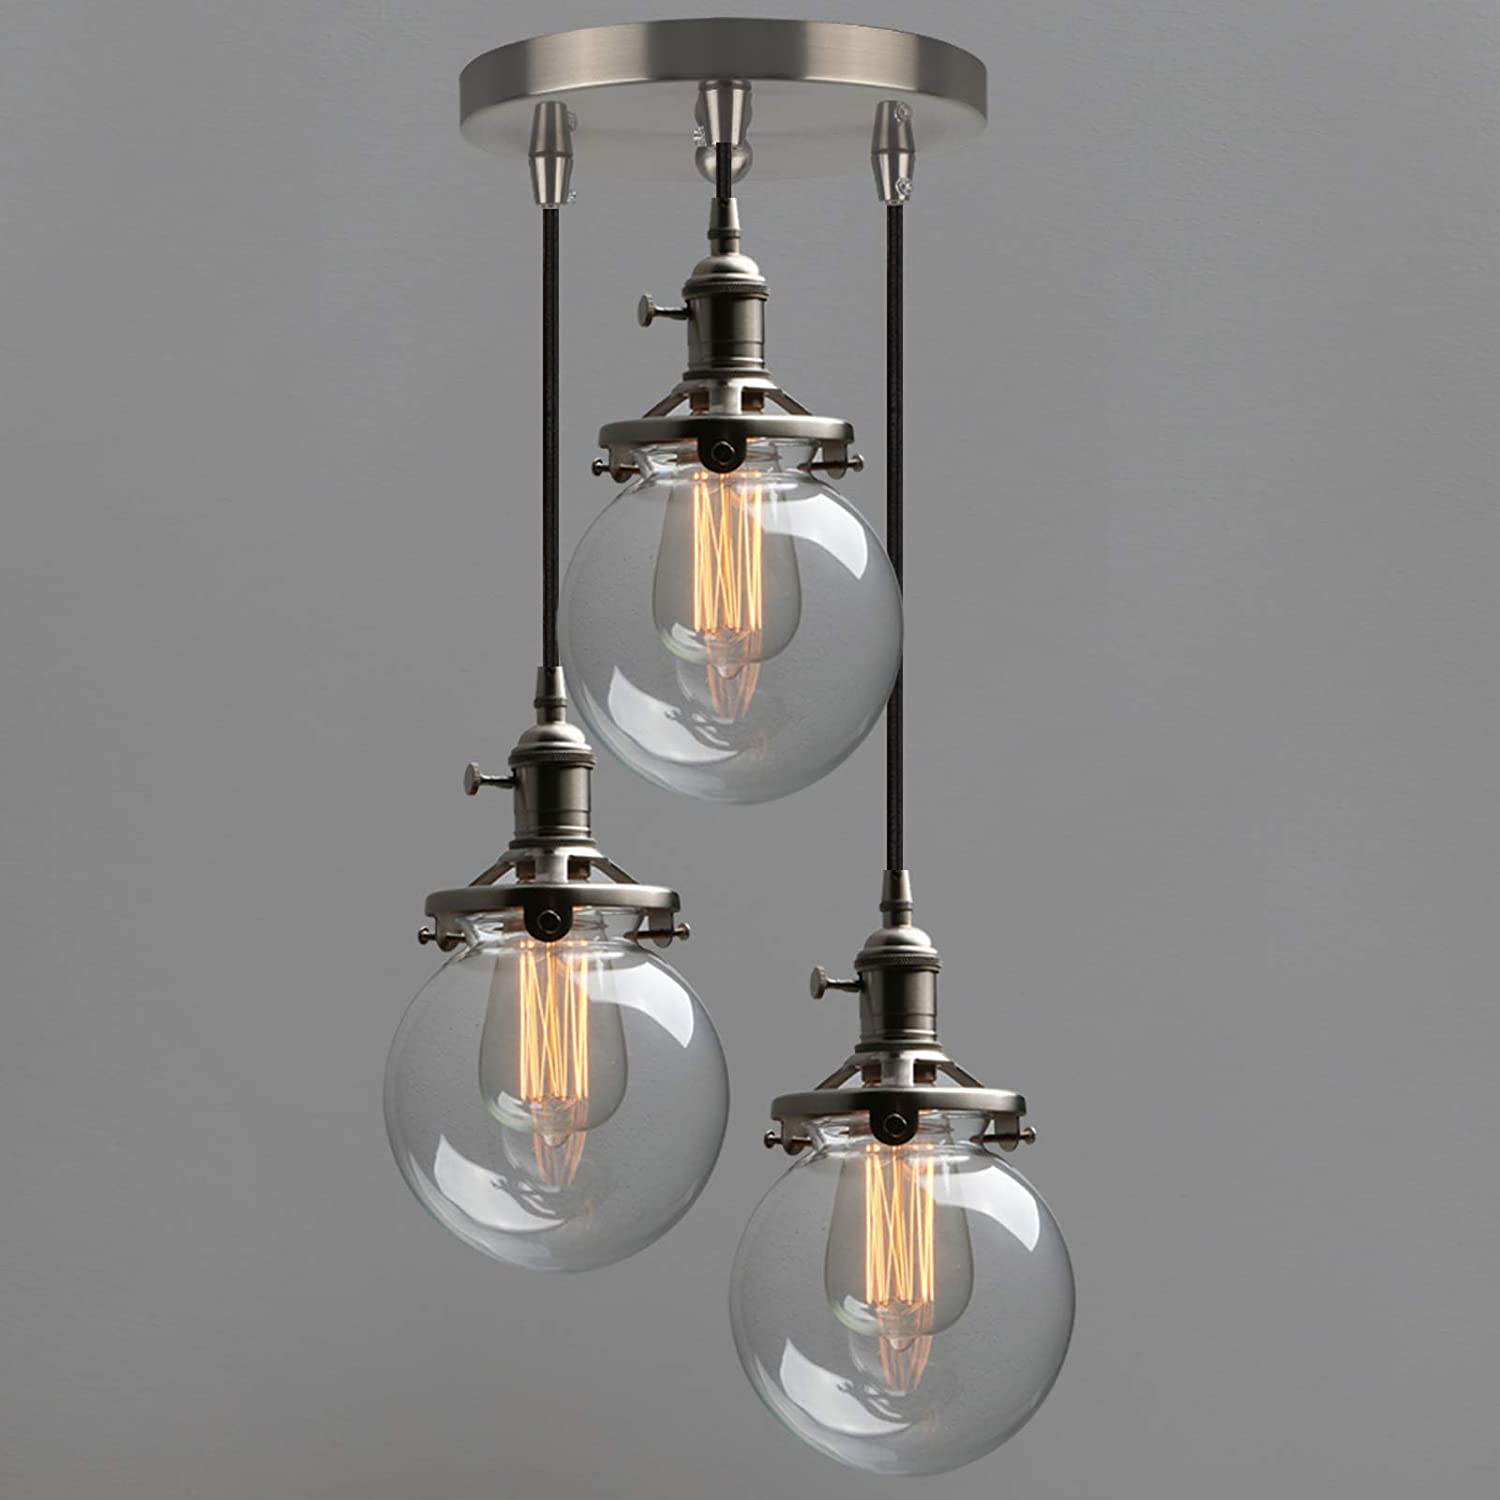 3 light ceiling light chandelier globe glass pendant lighting